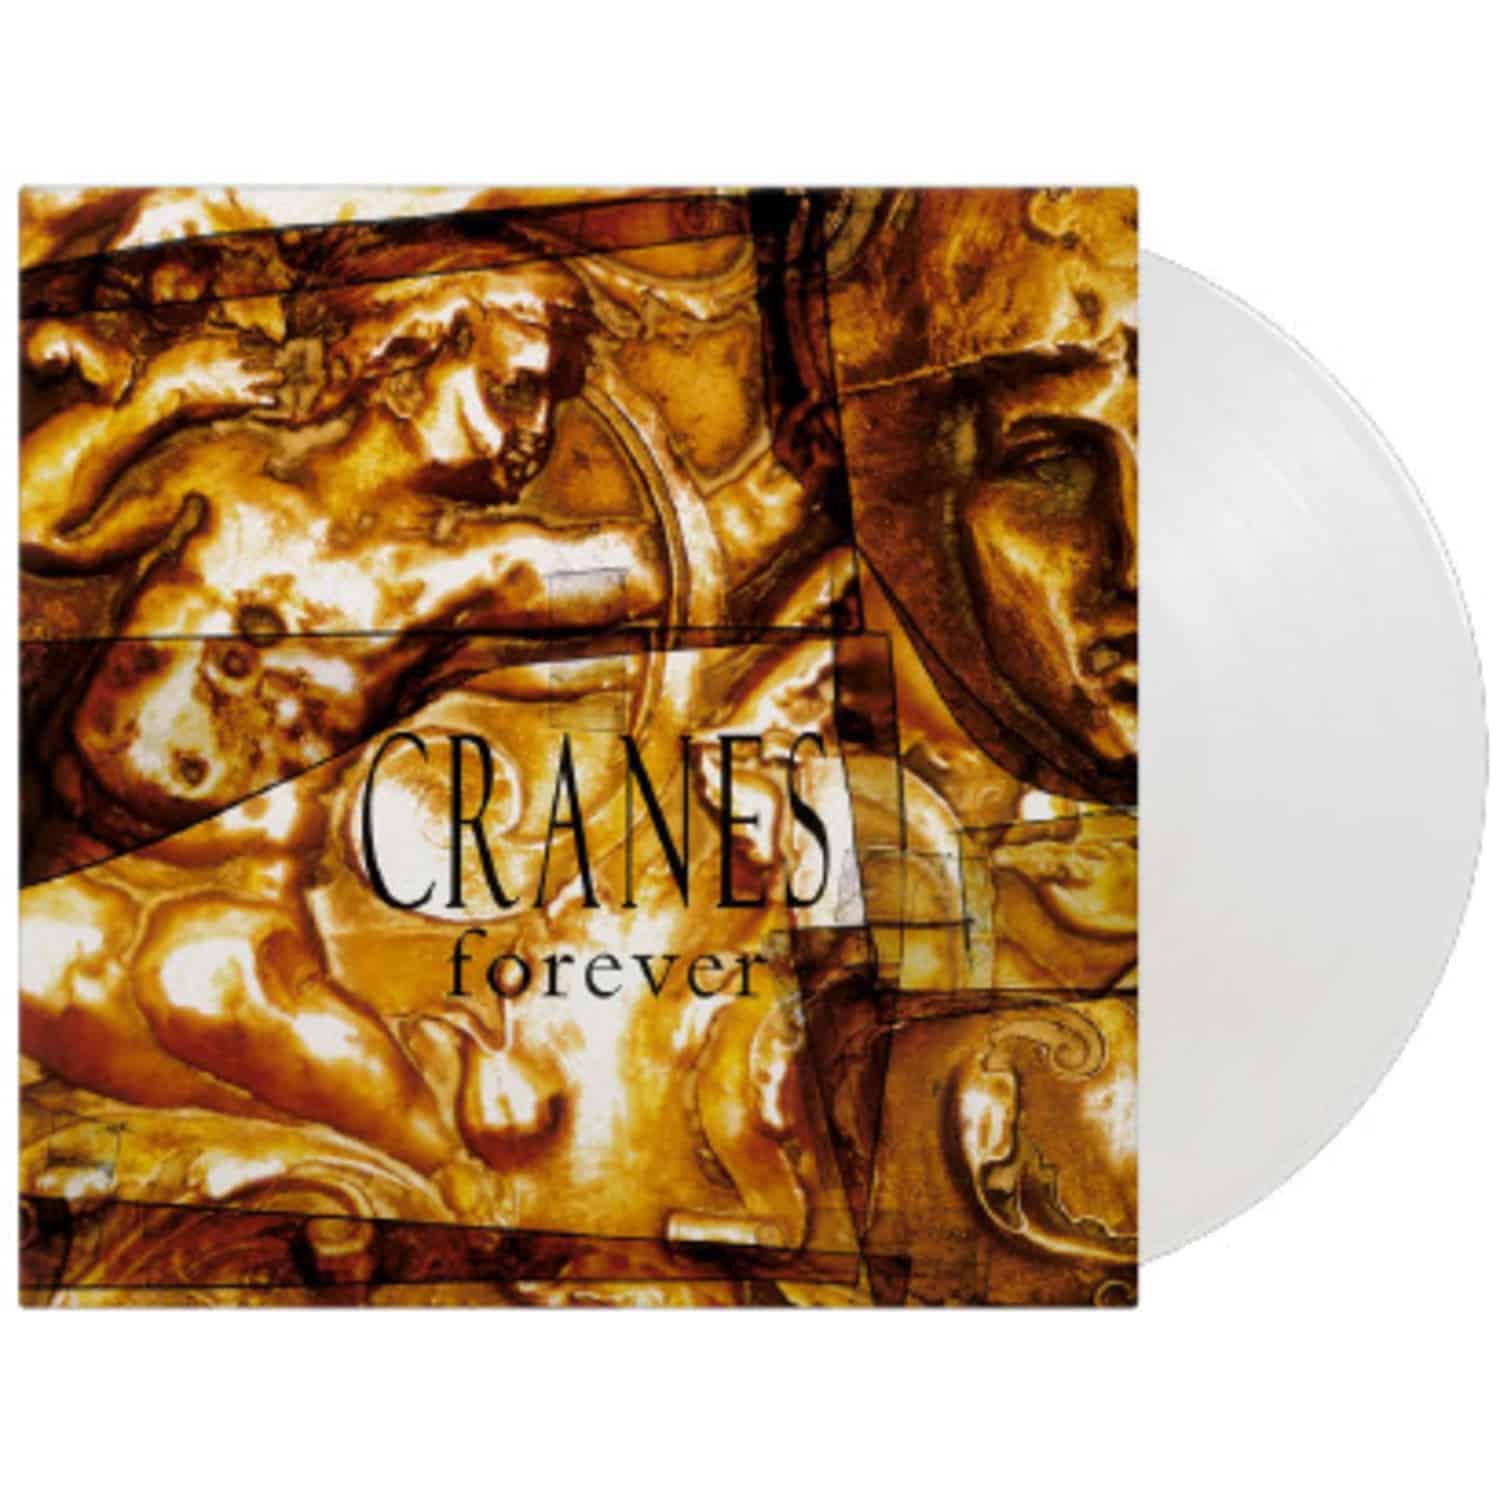 Cranes - FOREVER 